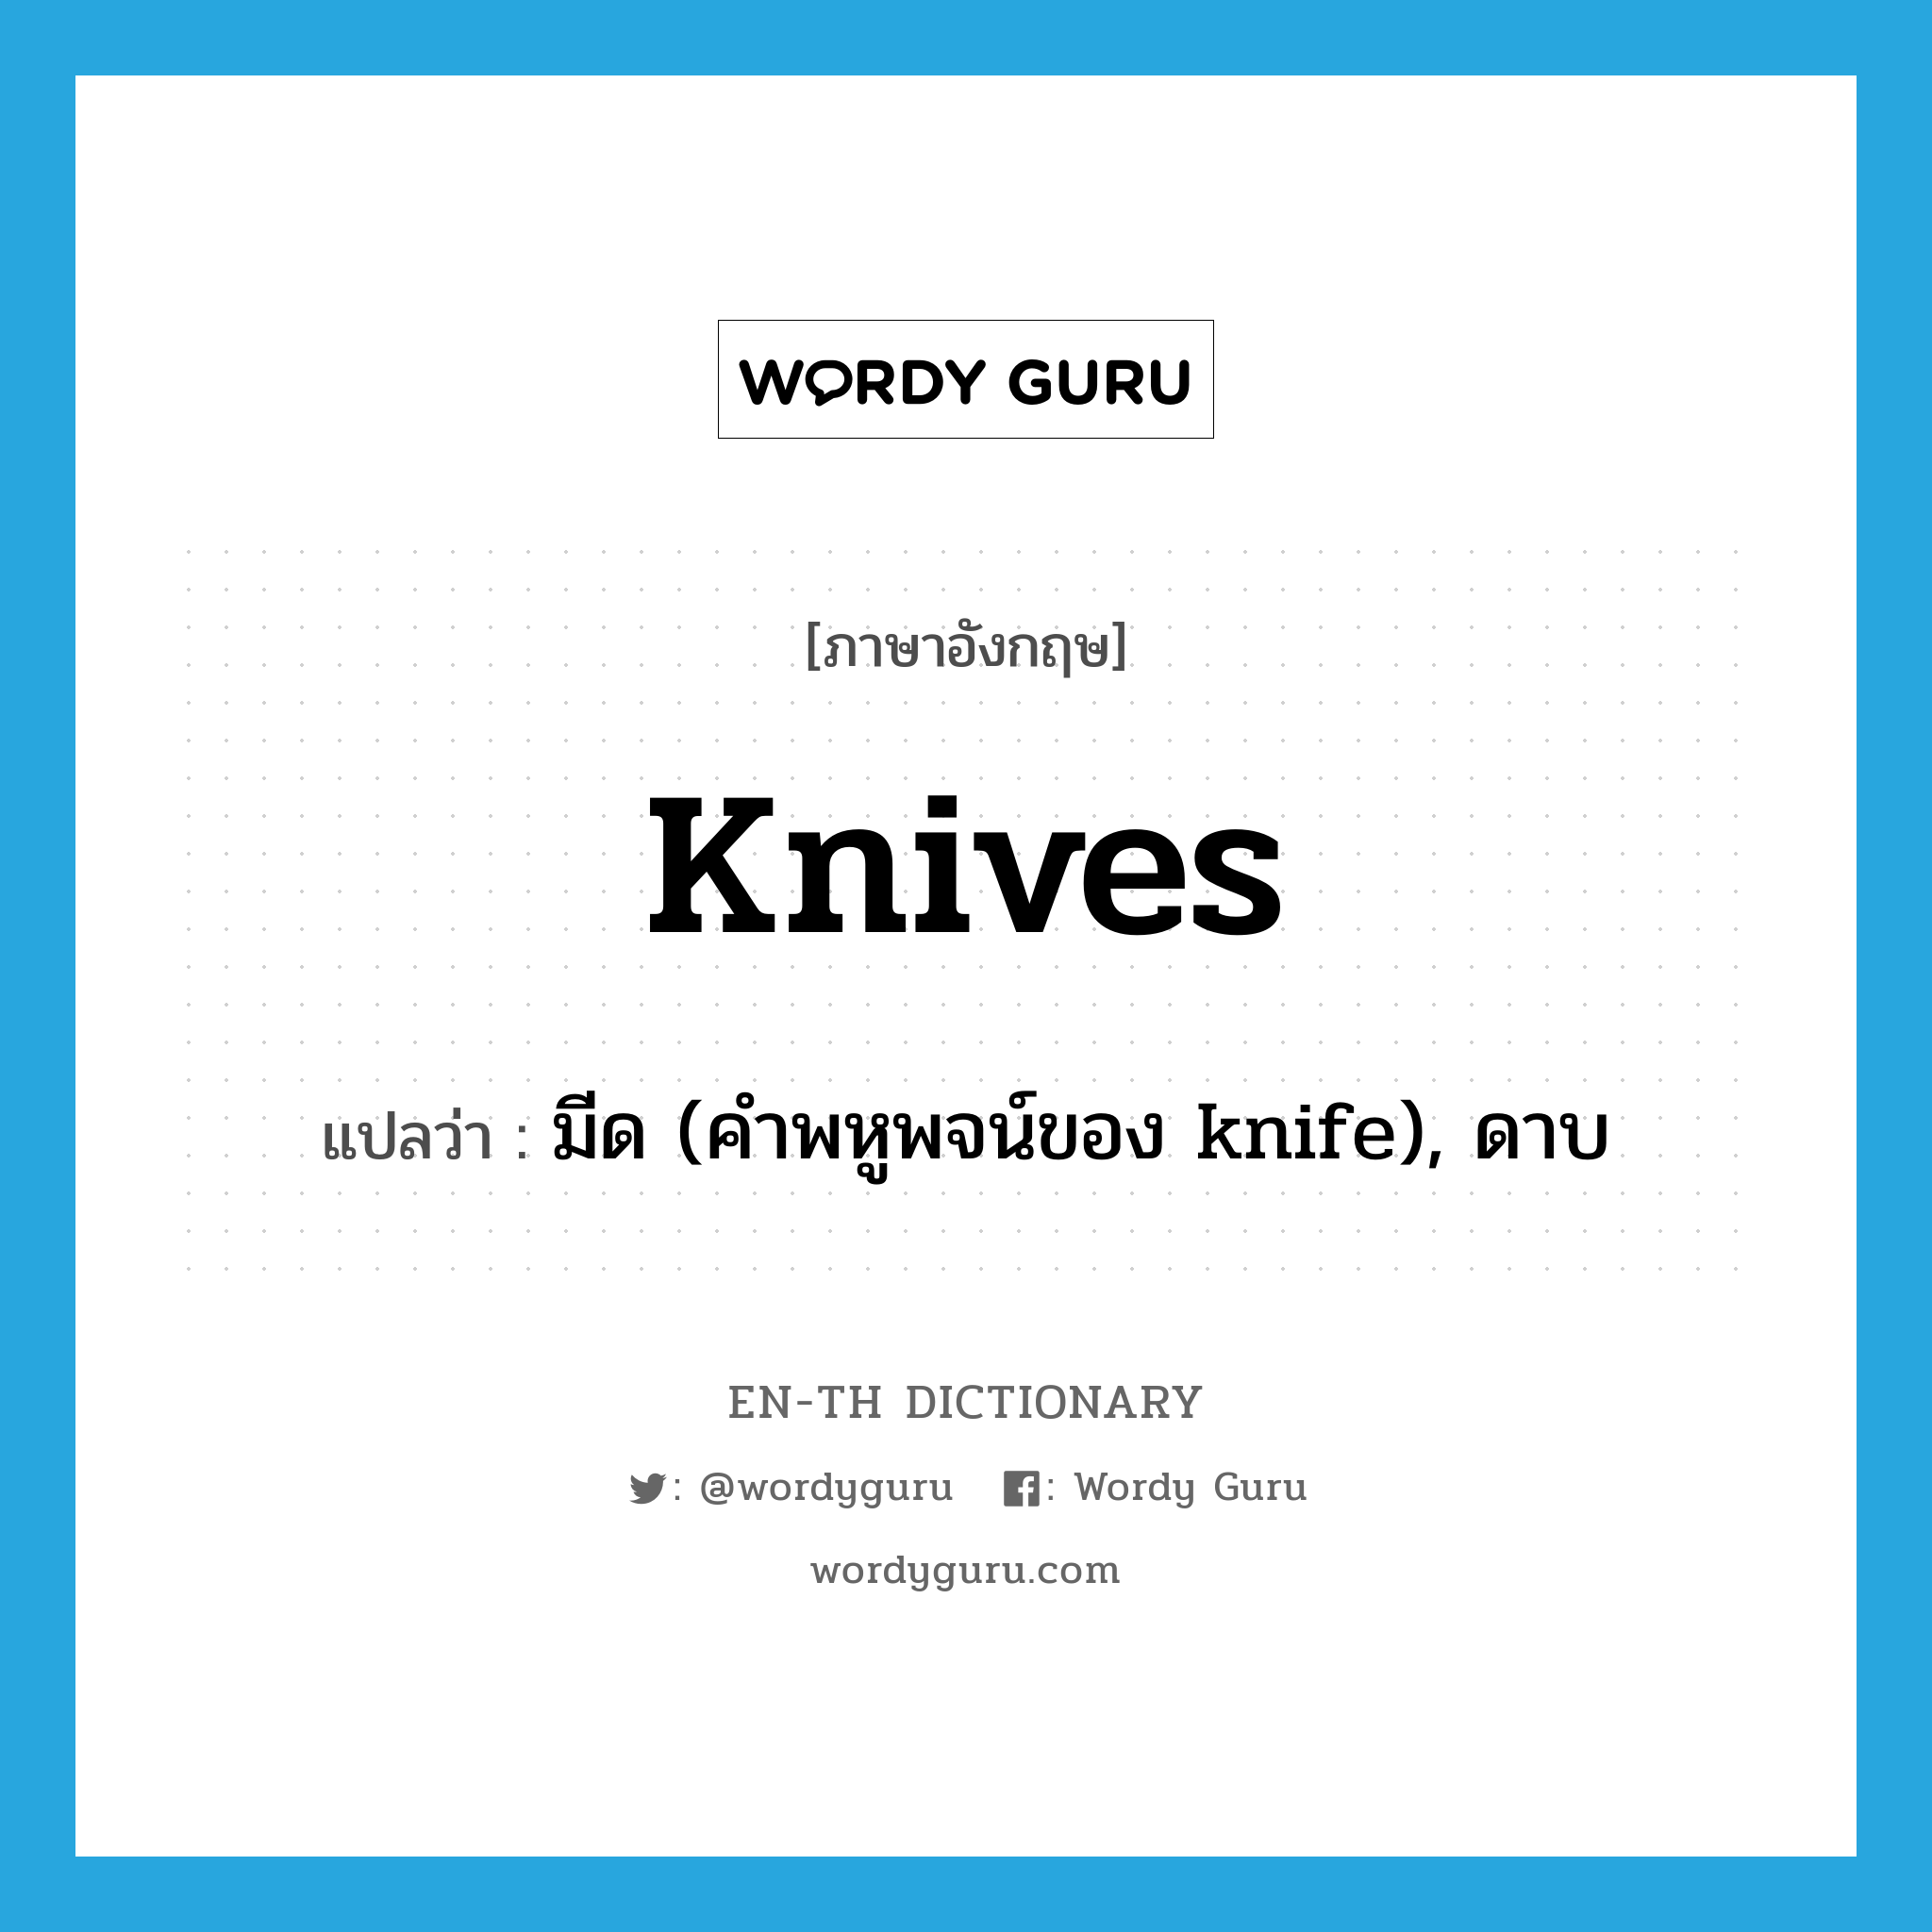 มีด (คำพหูพจน์ของ knife), ดาบ ภาษาอังกฤษ?, คำศัพท์ภาษาอังกฤษ มีด (คำพหูพจน์ของ knife), ดาบ แปลว่า knives ประเภท N หมวด N